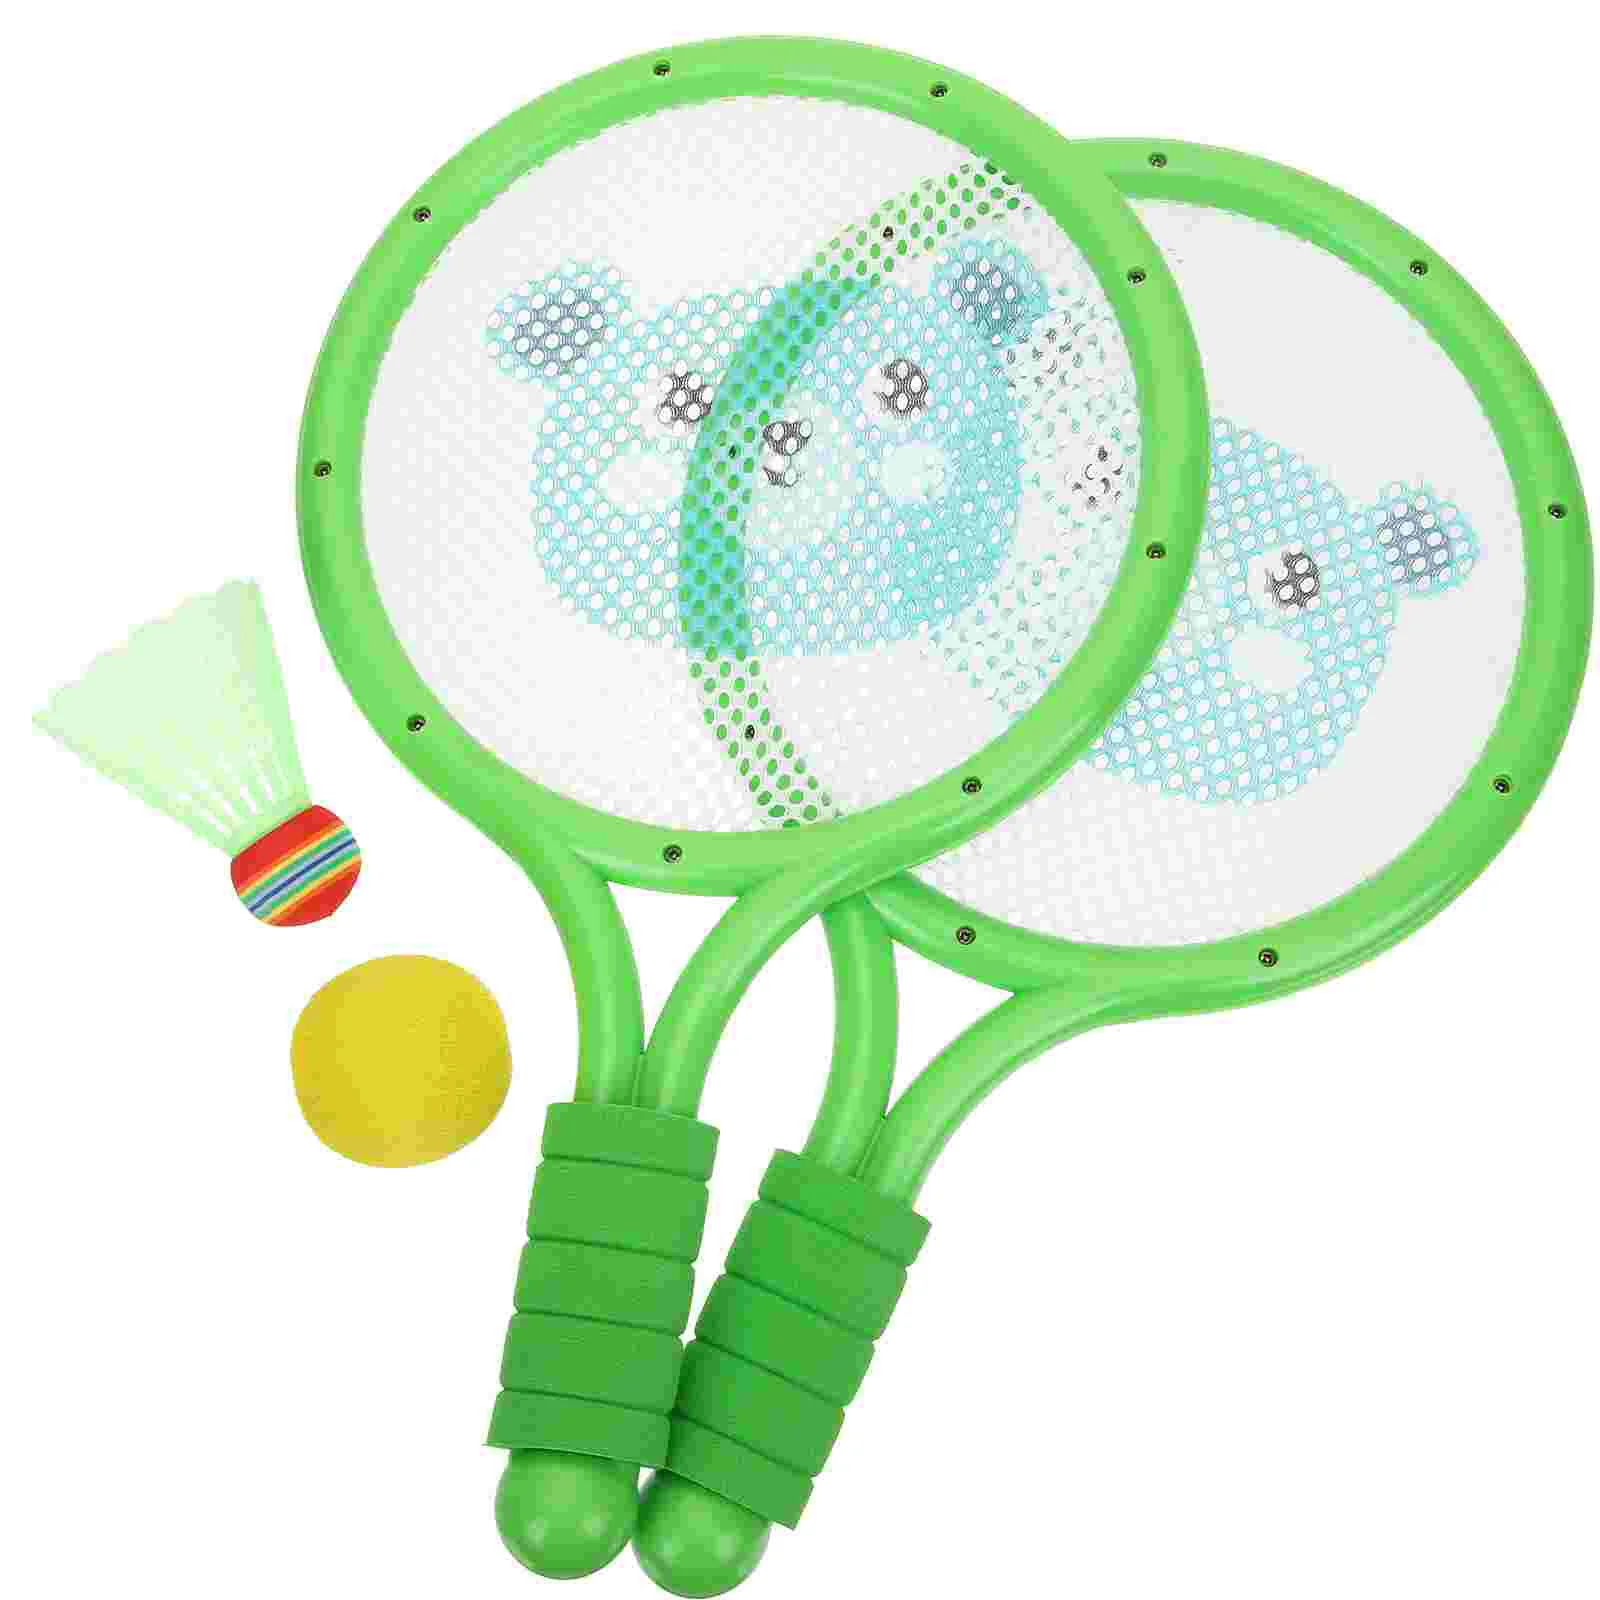 1 Set of Outdoor Badminton Racket Interactive Badm...